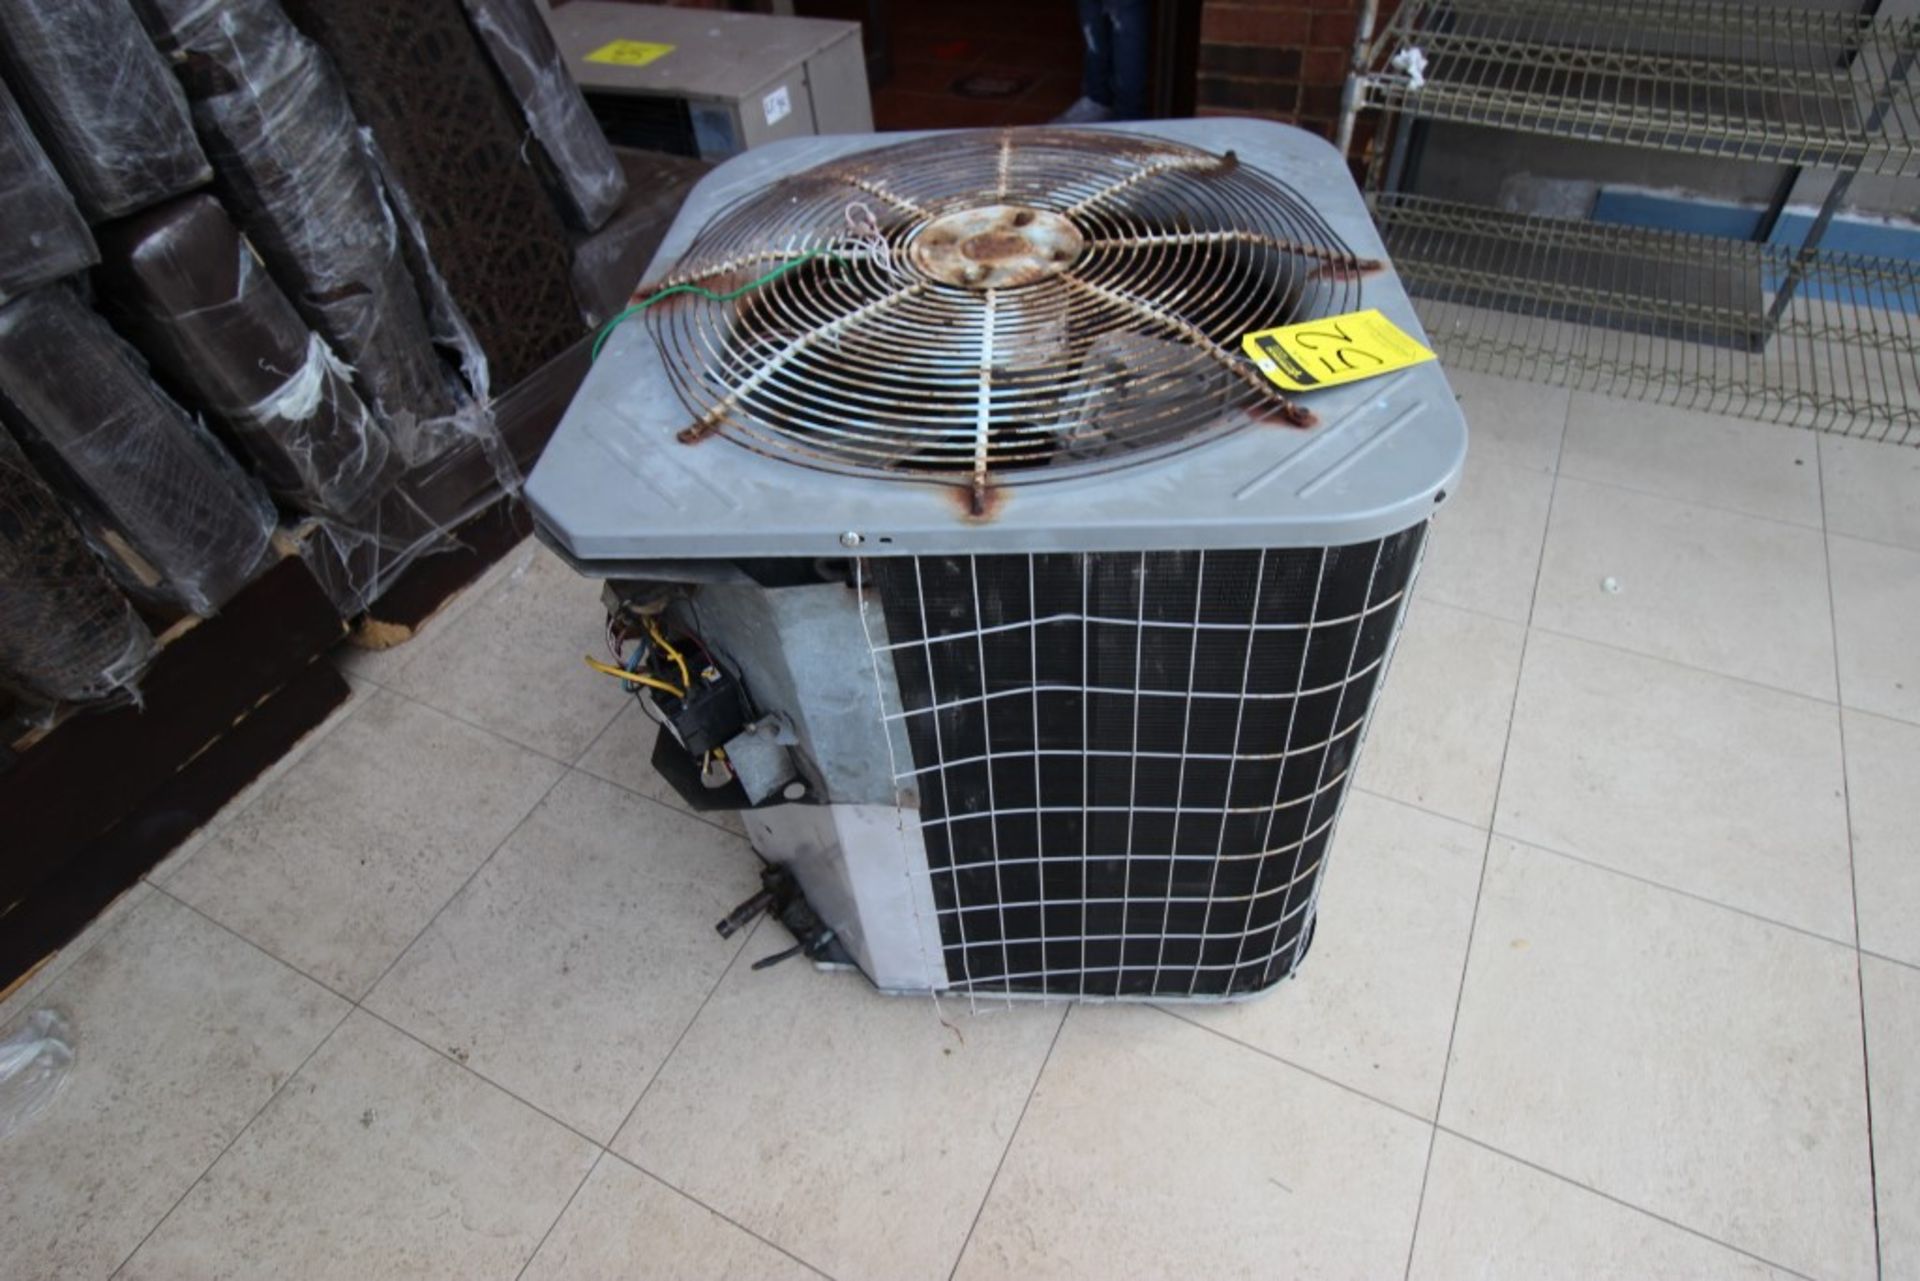 3 Unidades Condensadoras para aire acondicionado de un ventilador marca York, modelo:YCJD36S41S1A, - Image 10 of 19